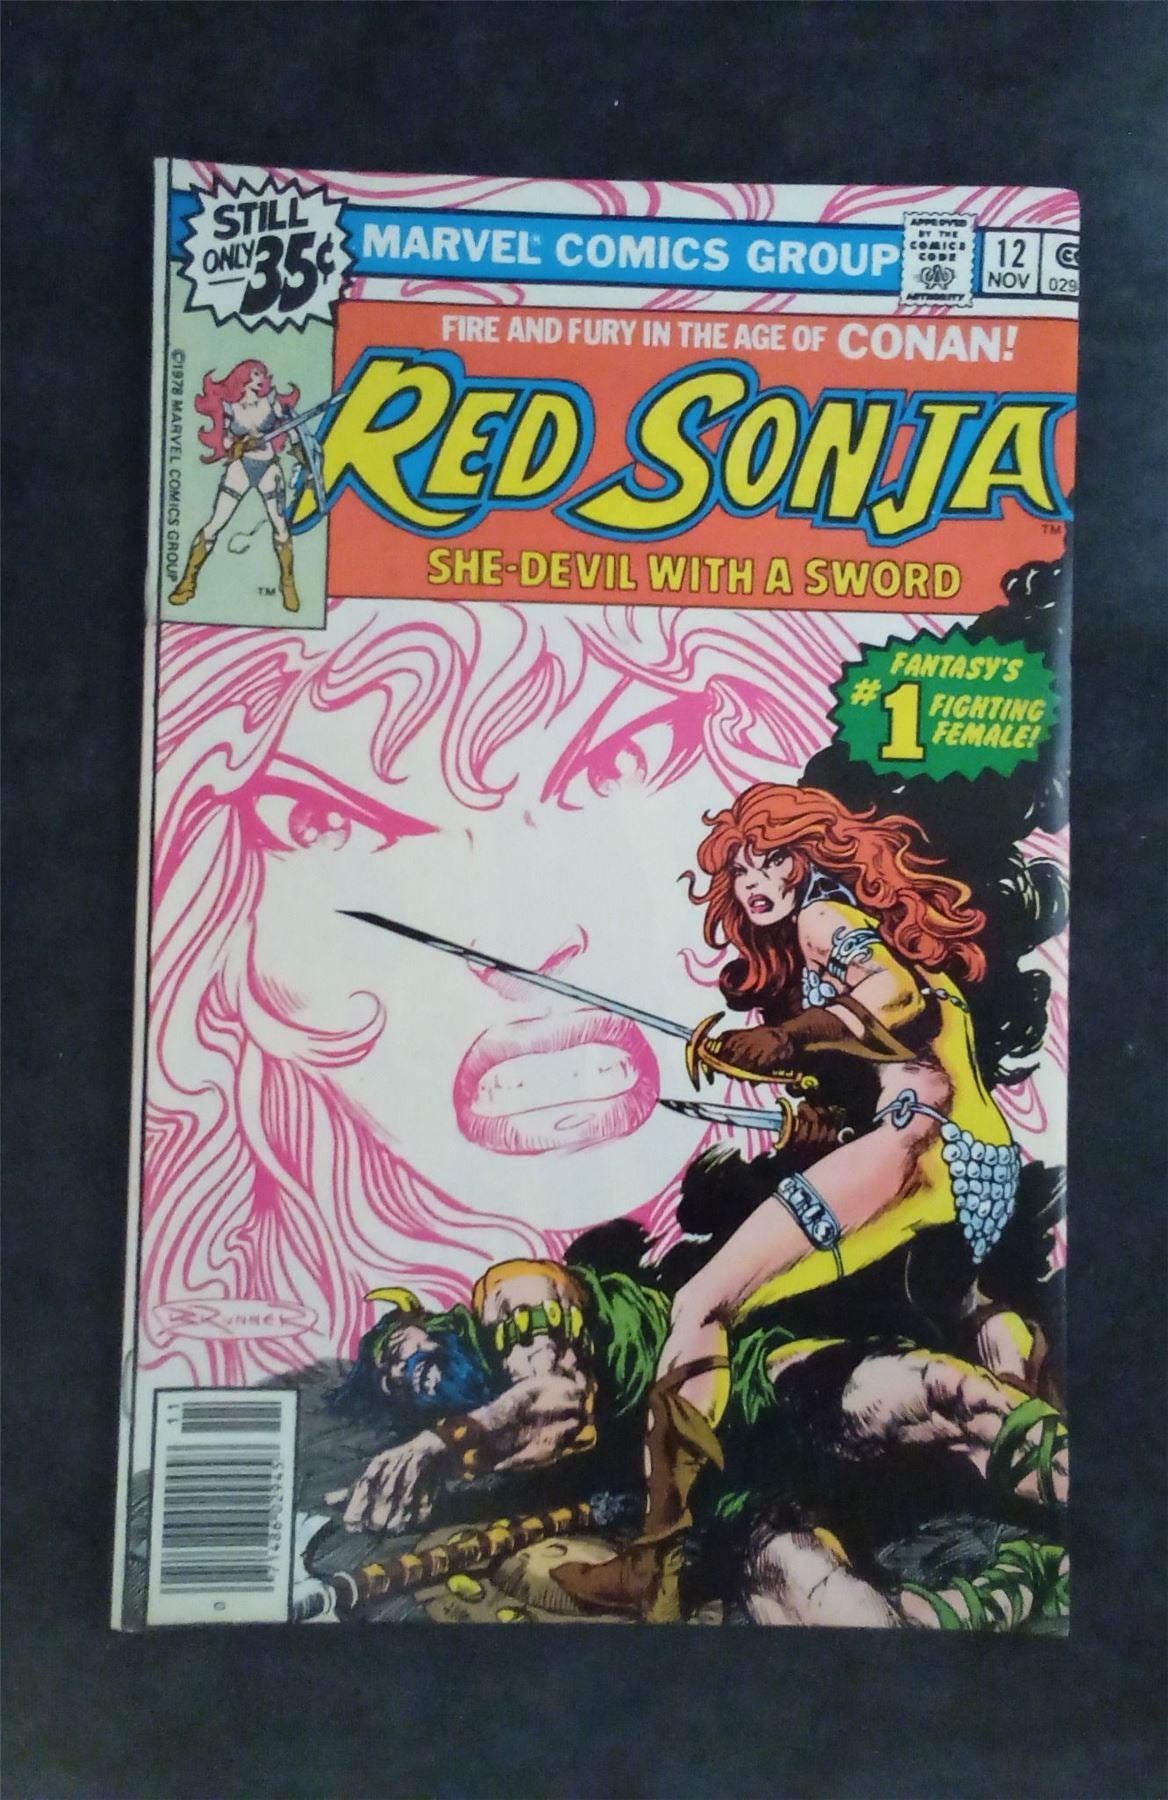 Red Sonja #12 1978 marvel Comic Book